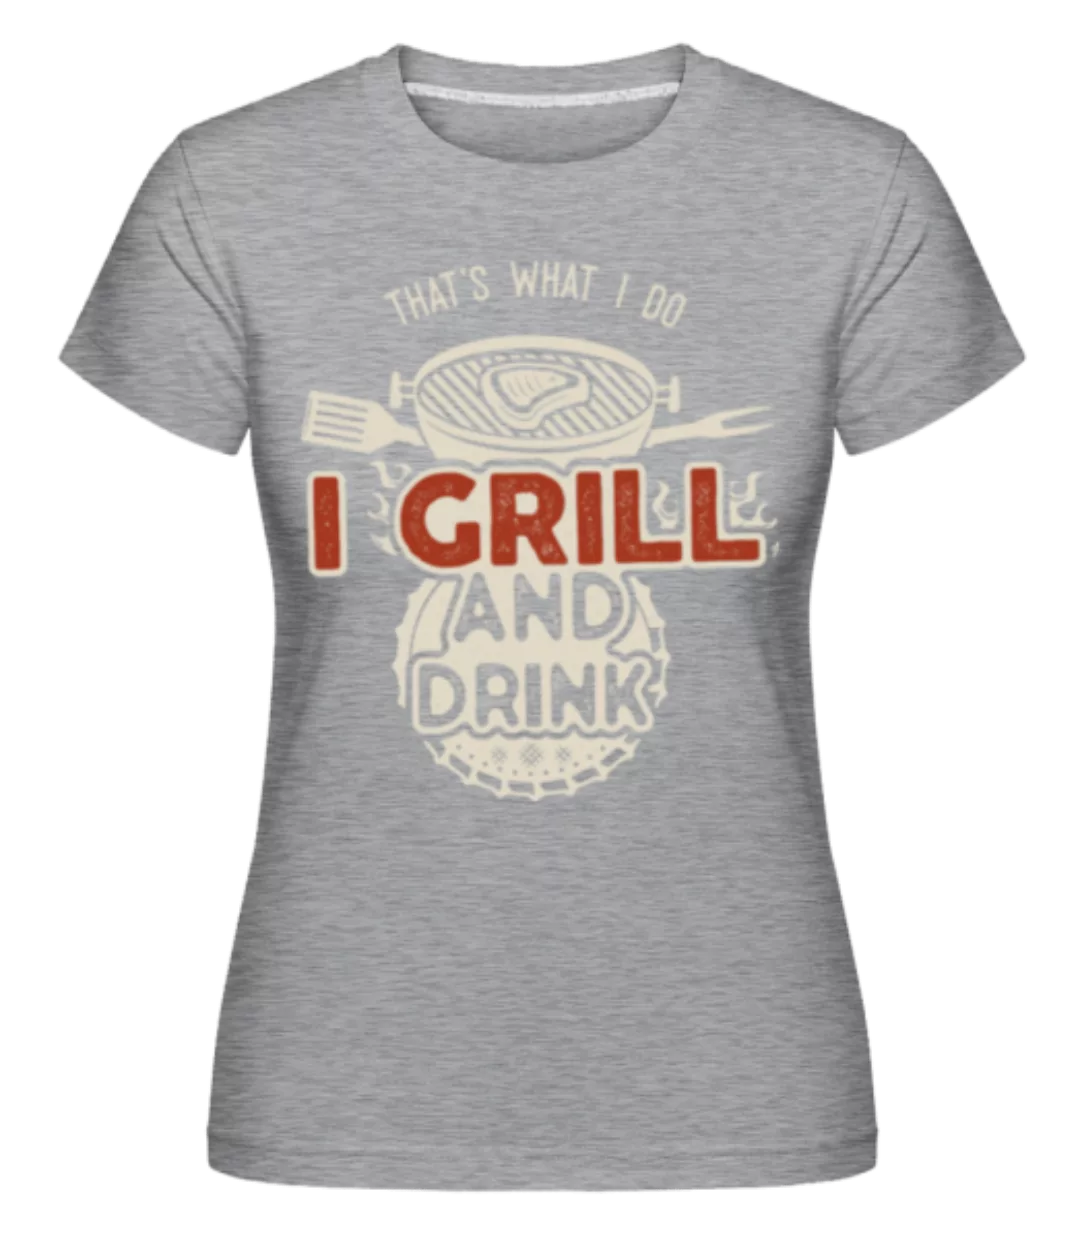 I Grill And Drink · Shirtinator Frauen T-Shirt günstig online kaufen